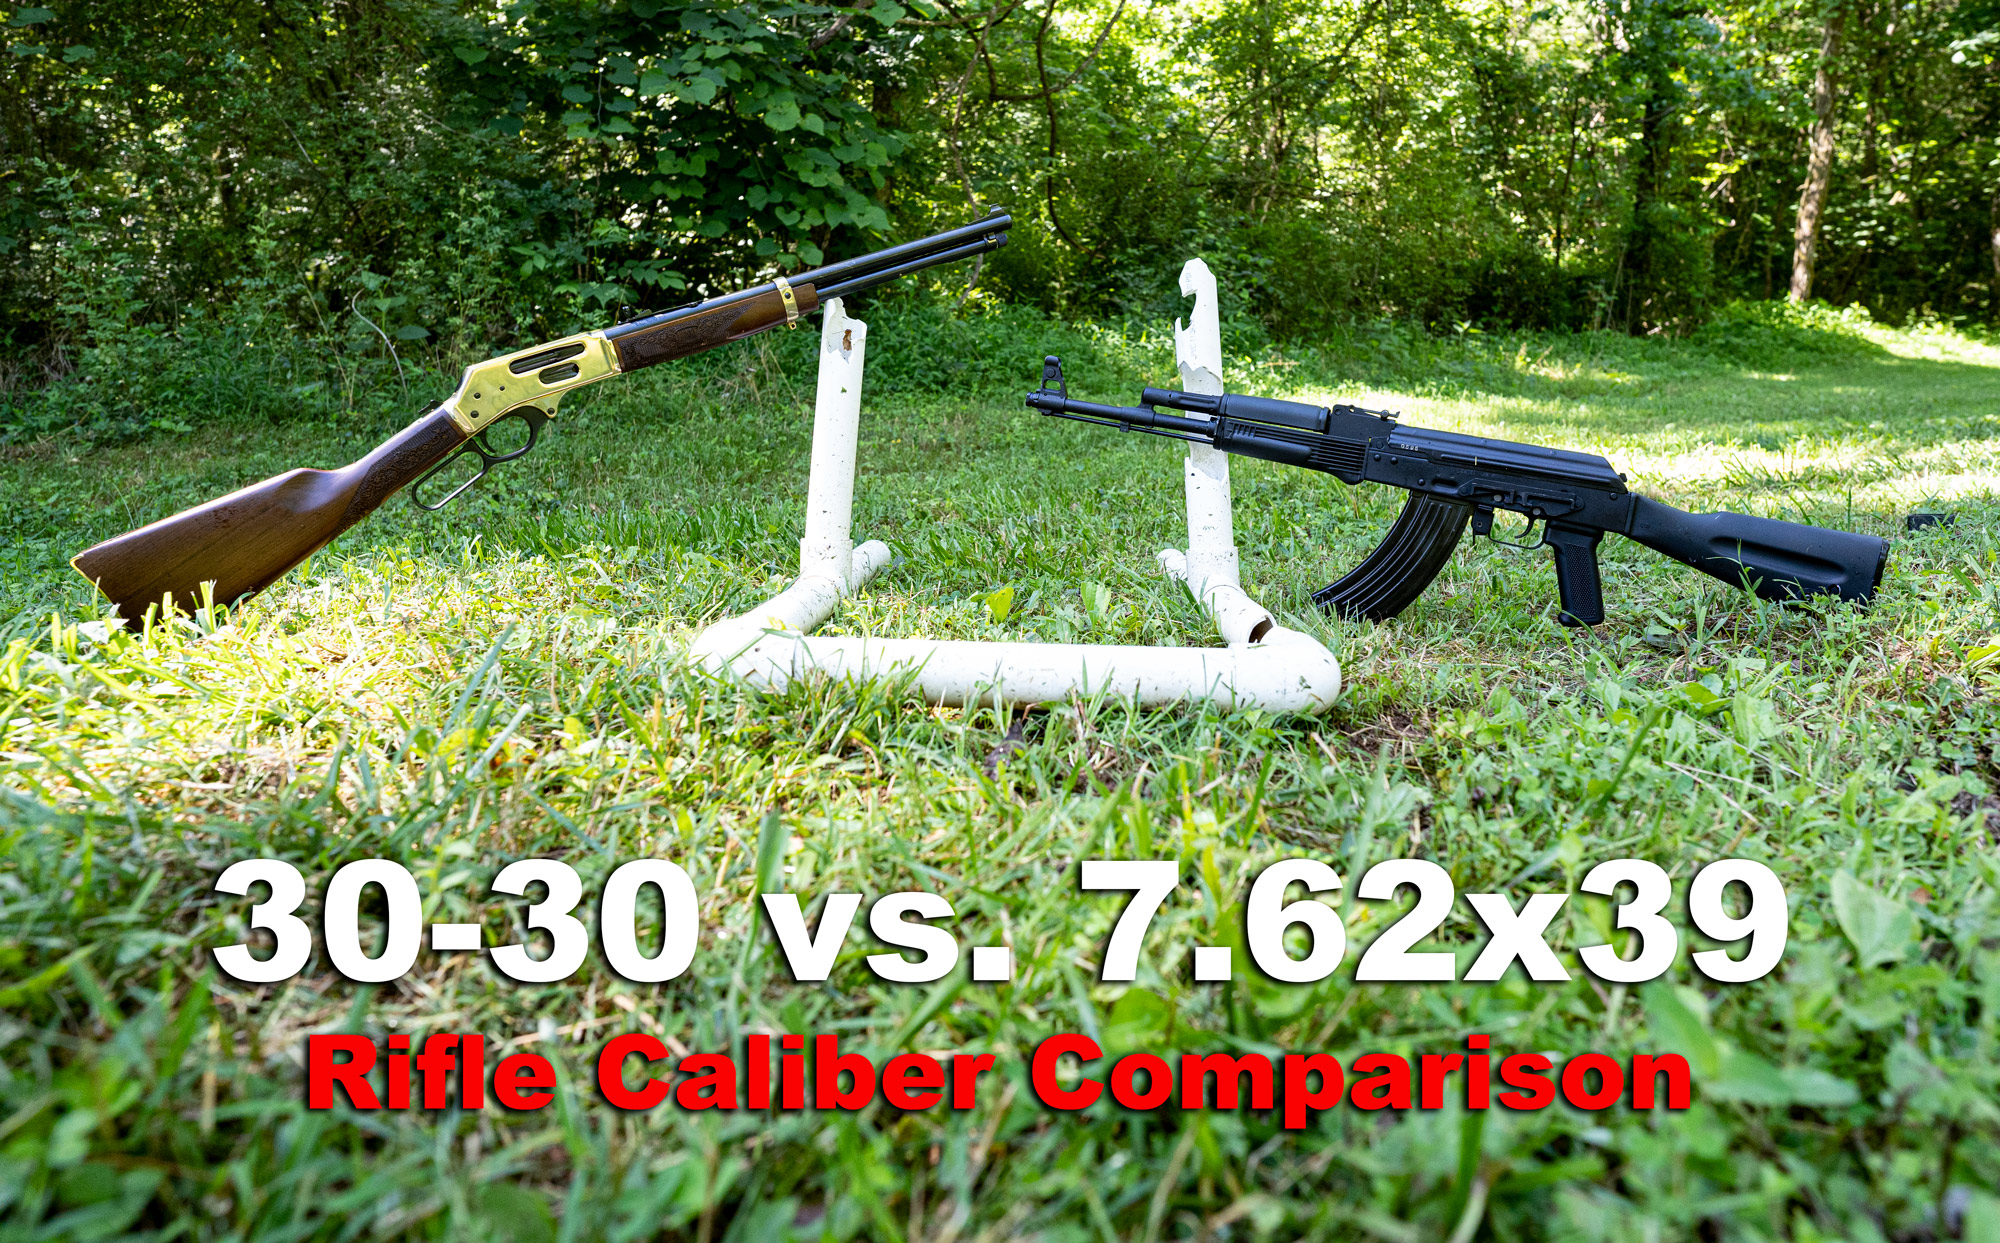 30-30 vs. 7.62x39 rifle on display at a shooting range